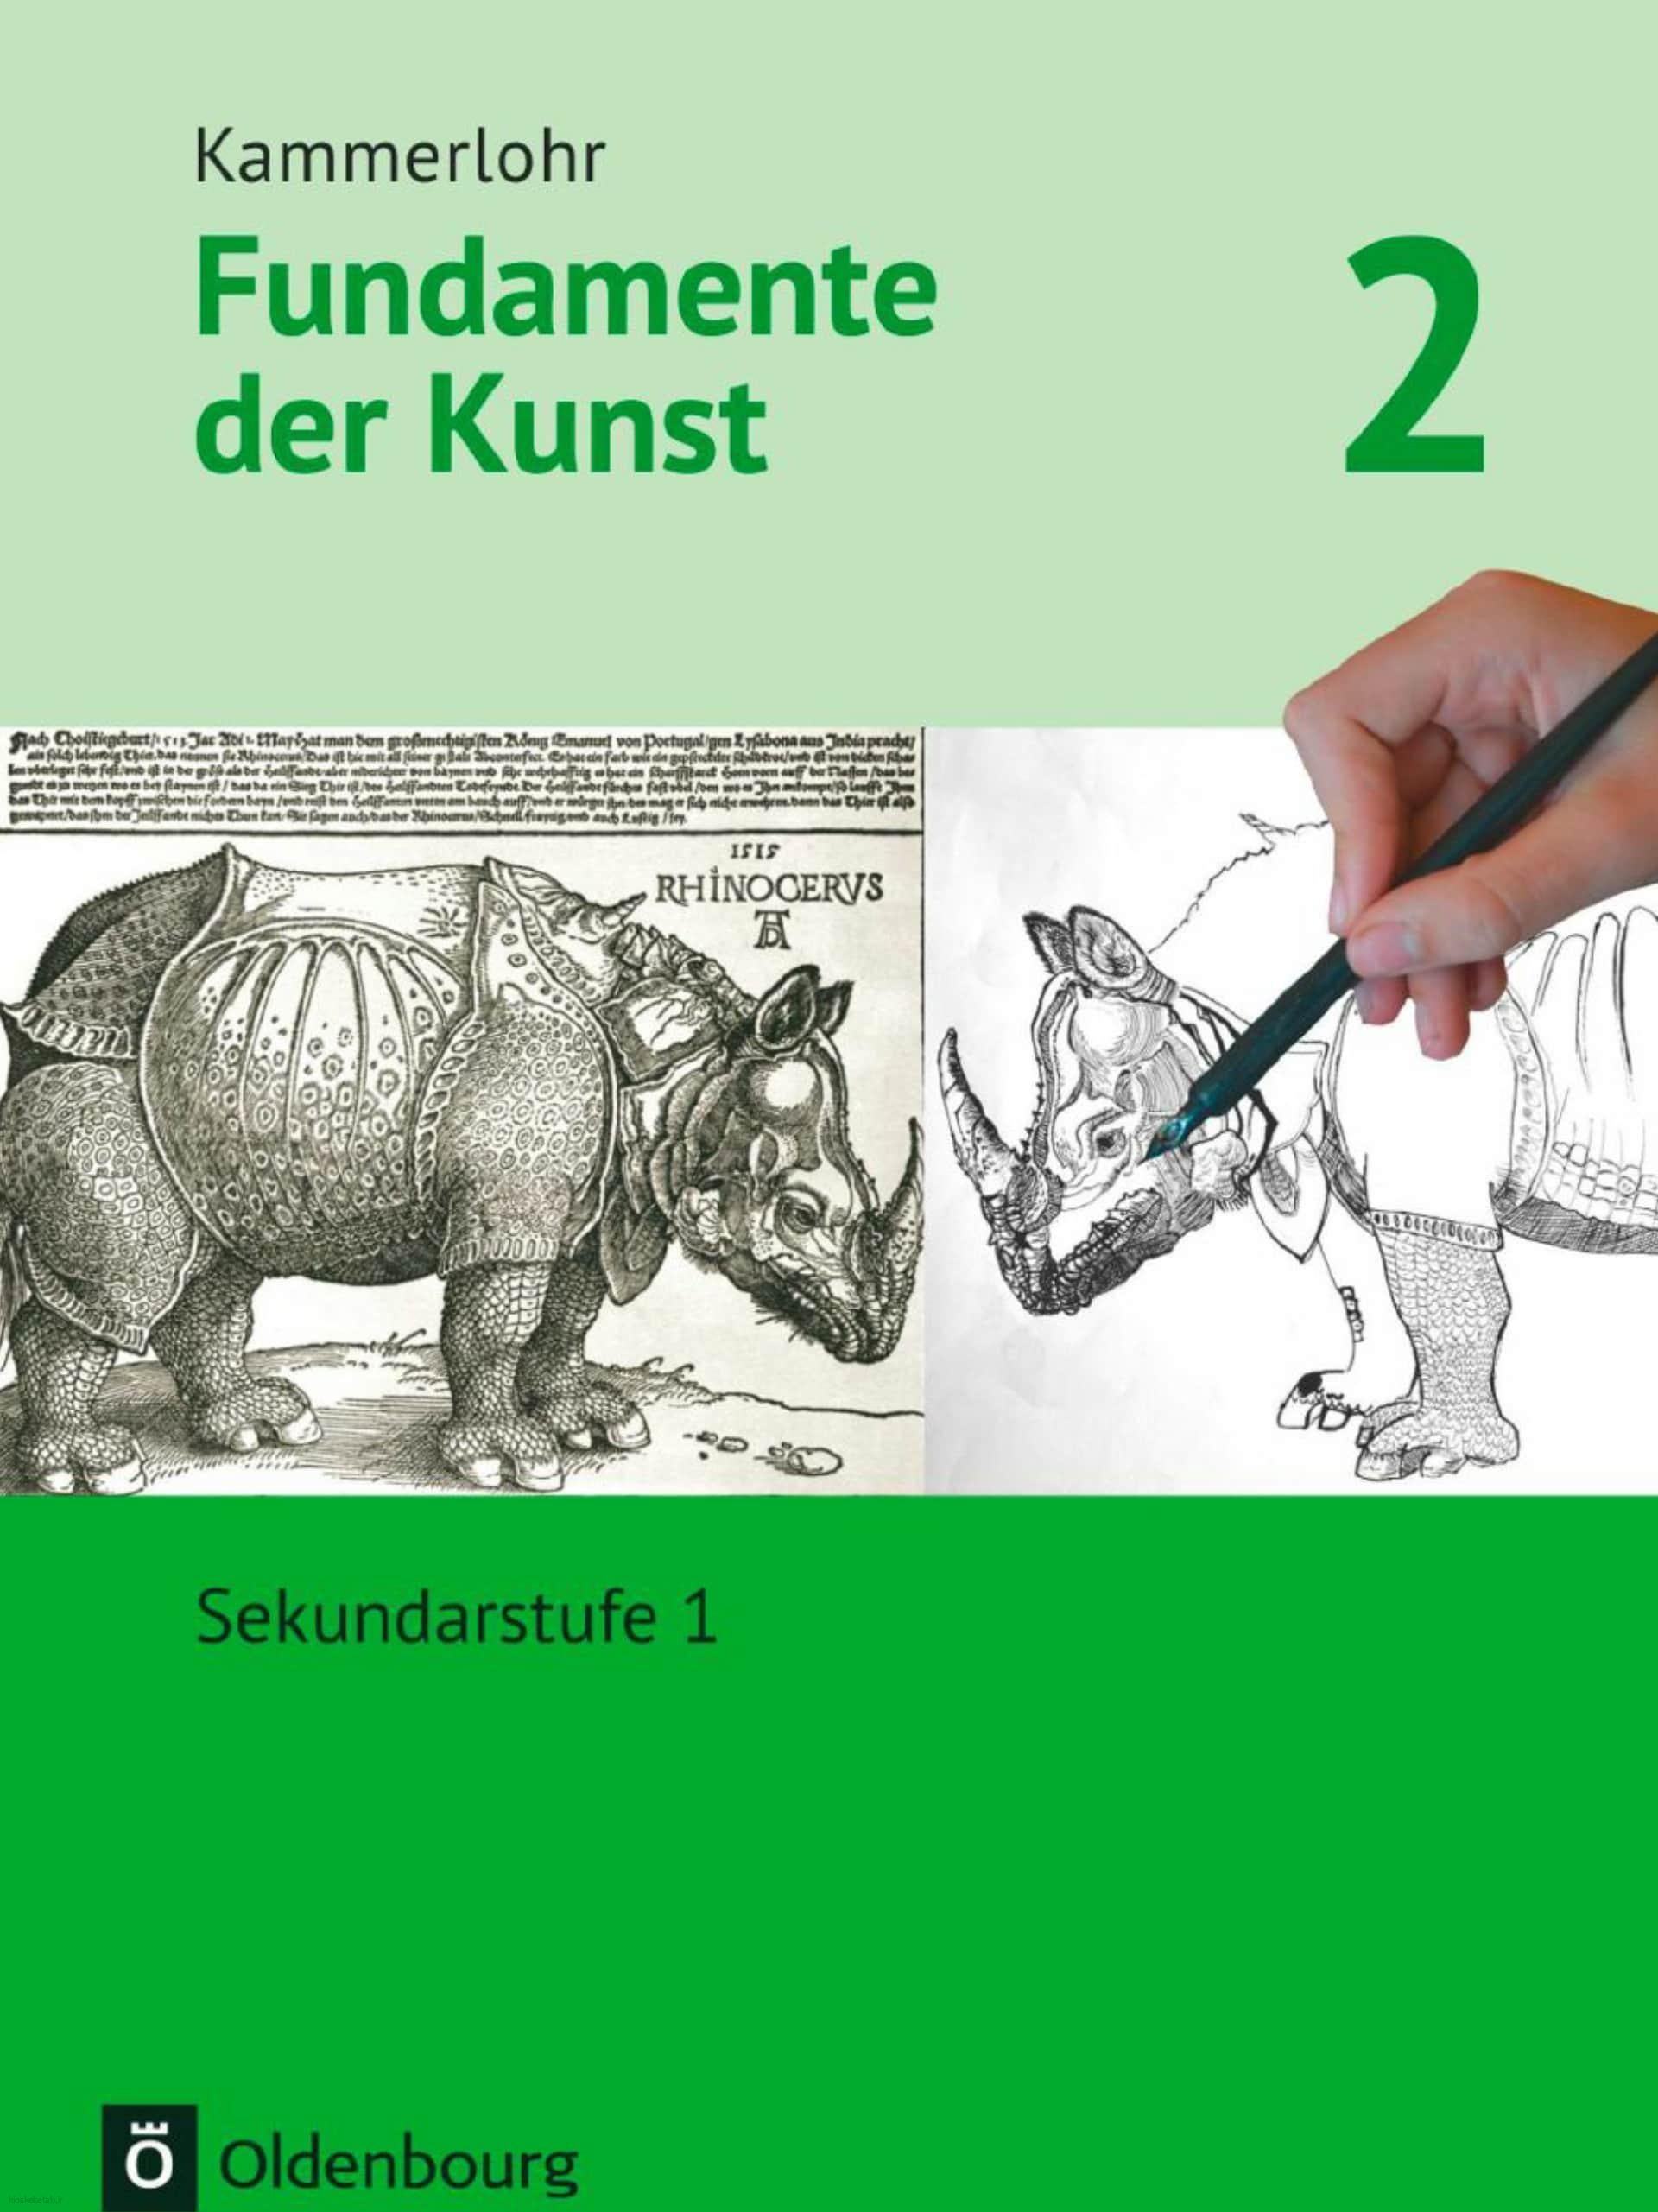 دانلود کتاب آلمانیfundamente der kunst 2